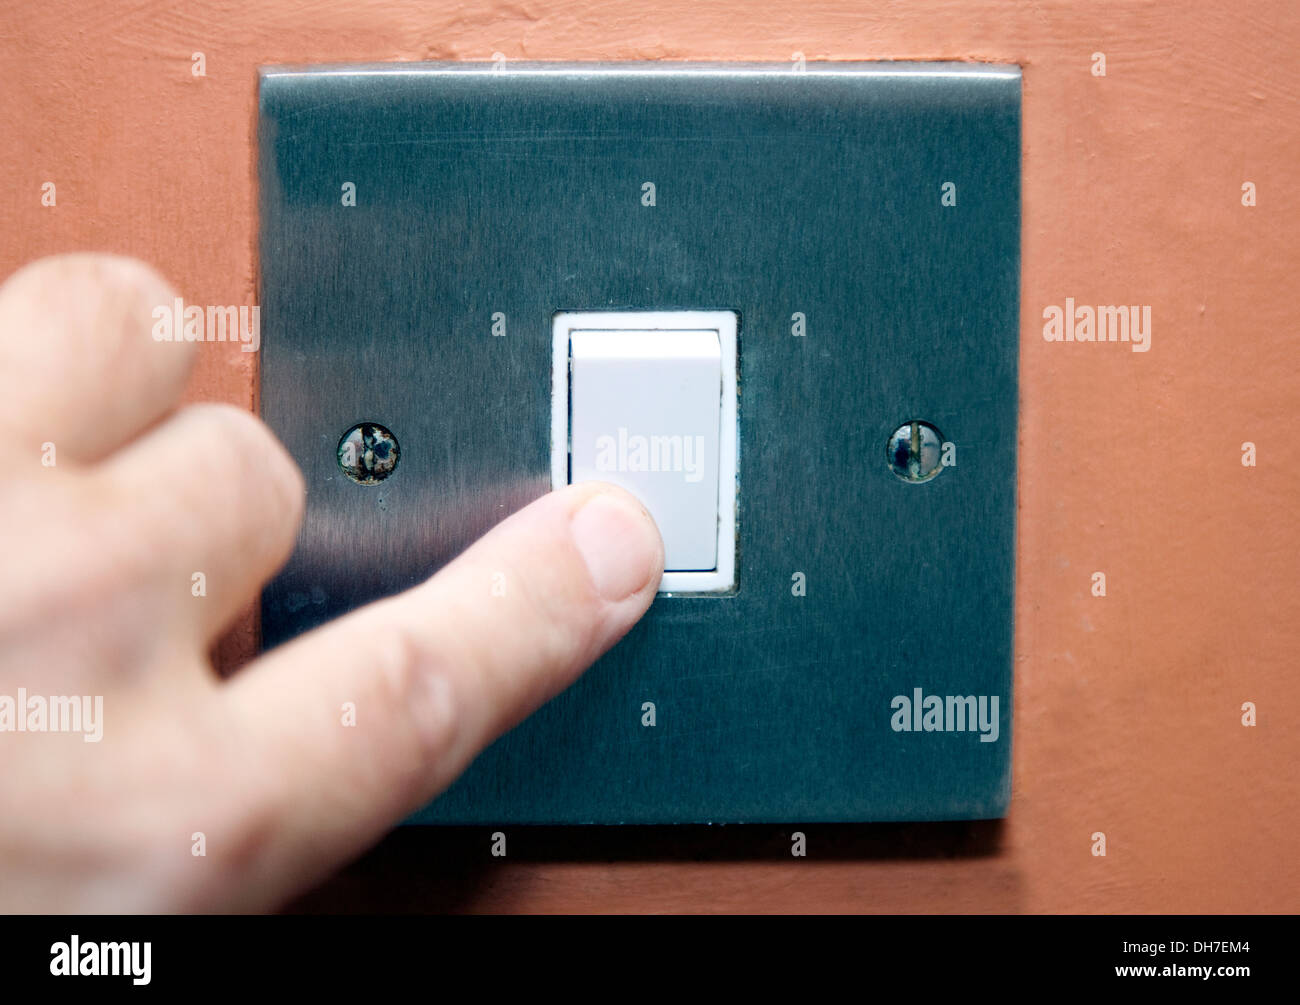 Accensione/spegnimento interruttore luce nella casa, Londra Foto Stock